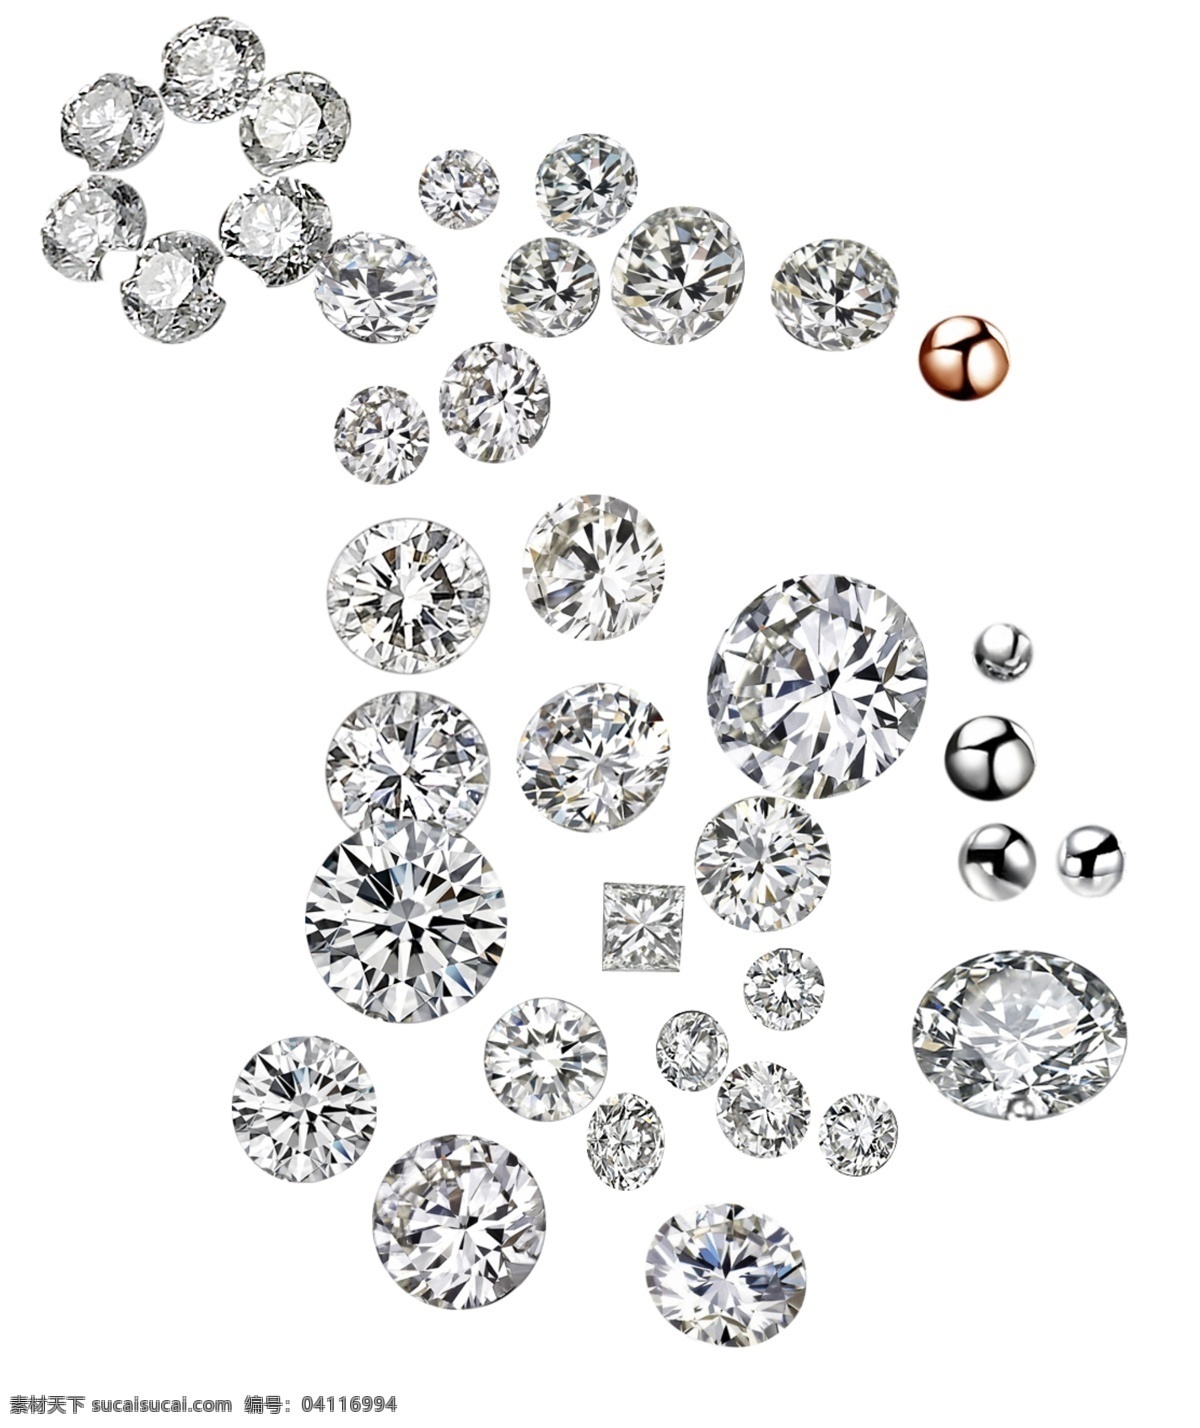 钻石链子 钻石图片模板 发光的钻石 美丽的钻石 蓝宝石 宝石钻石 钻石广告 分层